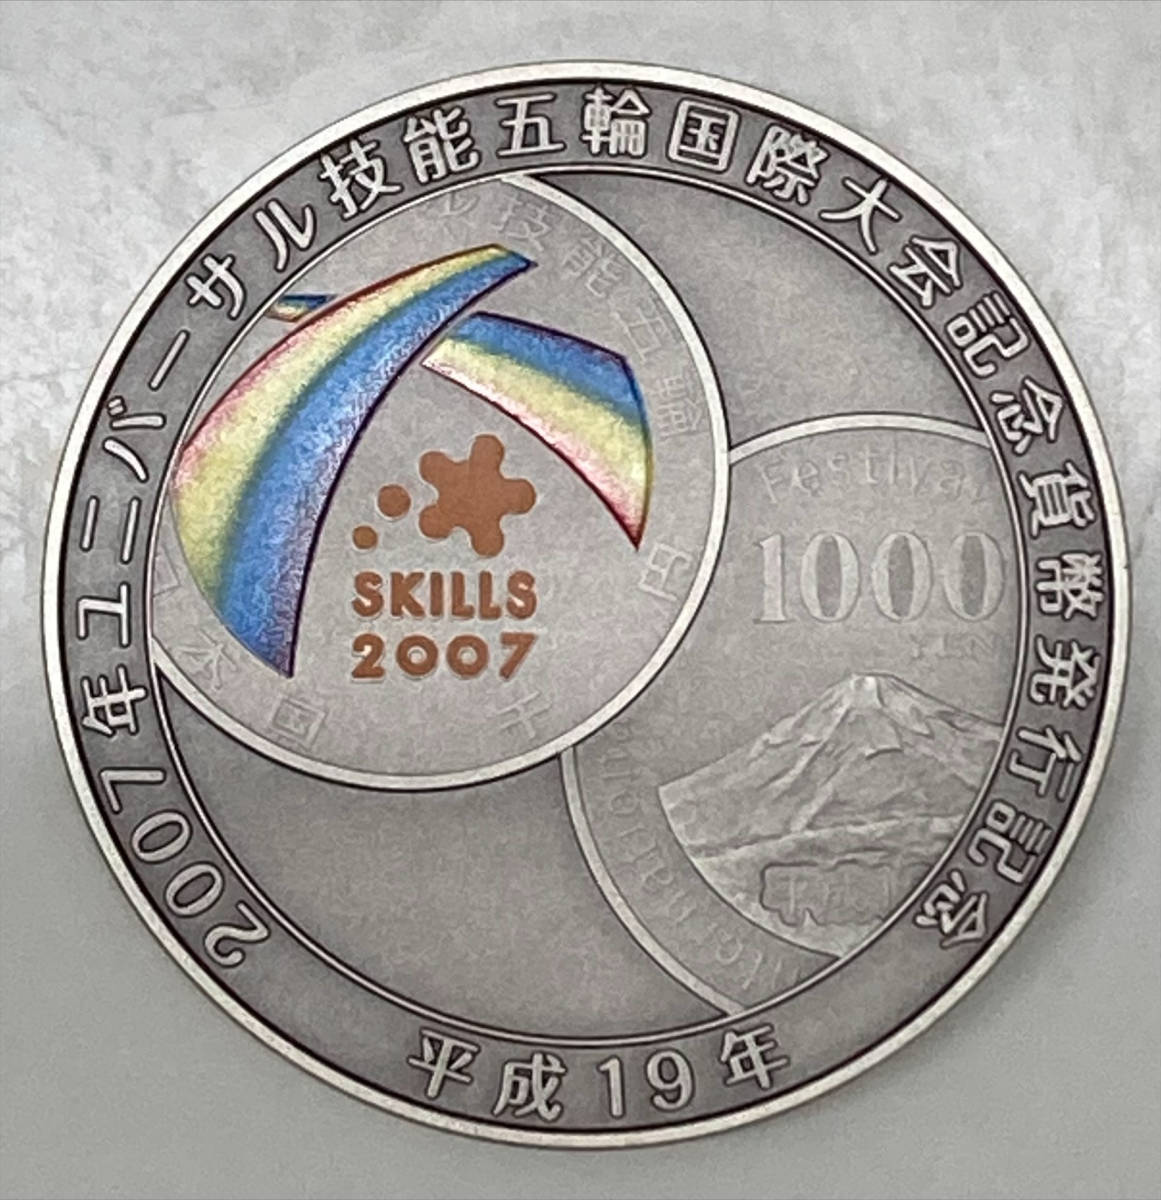 3530 【美品】2007年 平成19年ユニバーサル技能五輪国際大会記念メダル